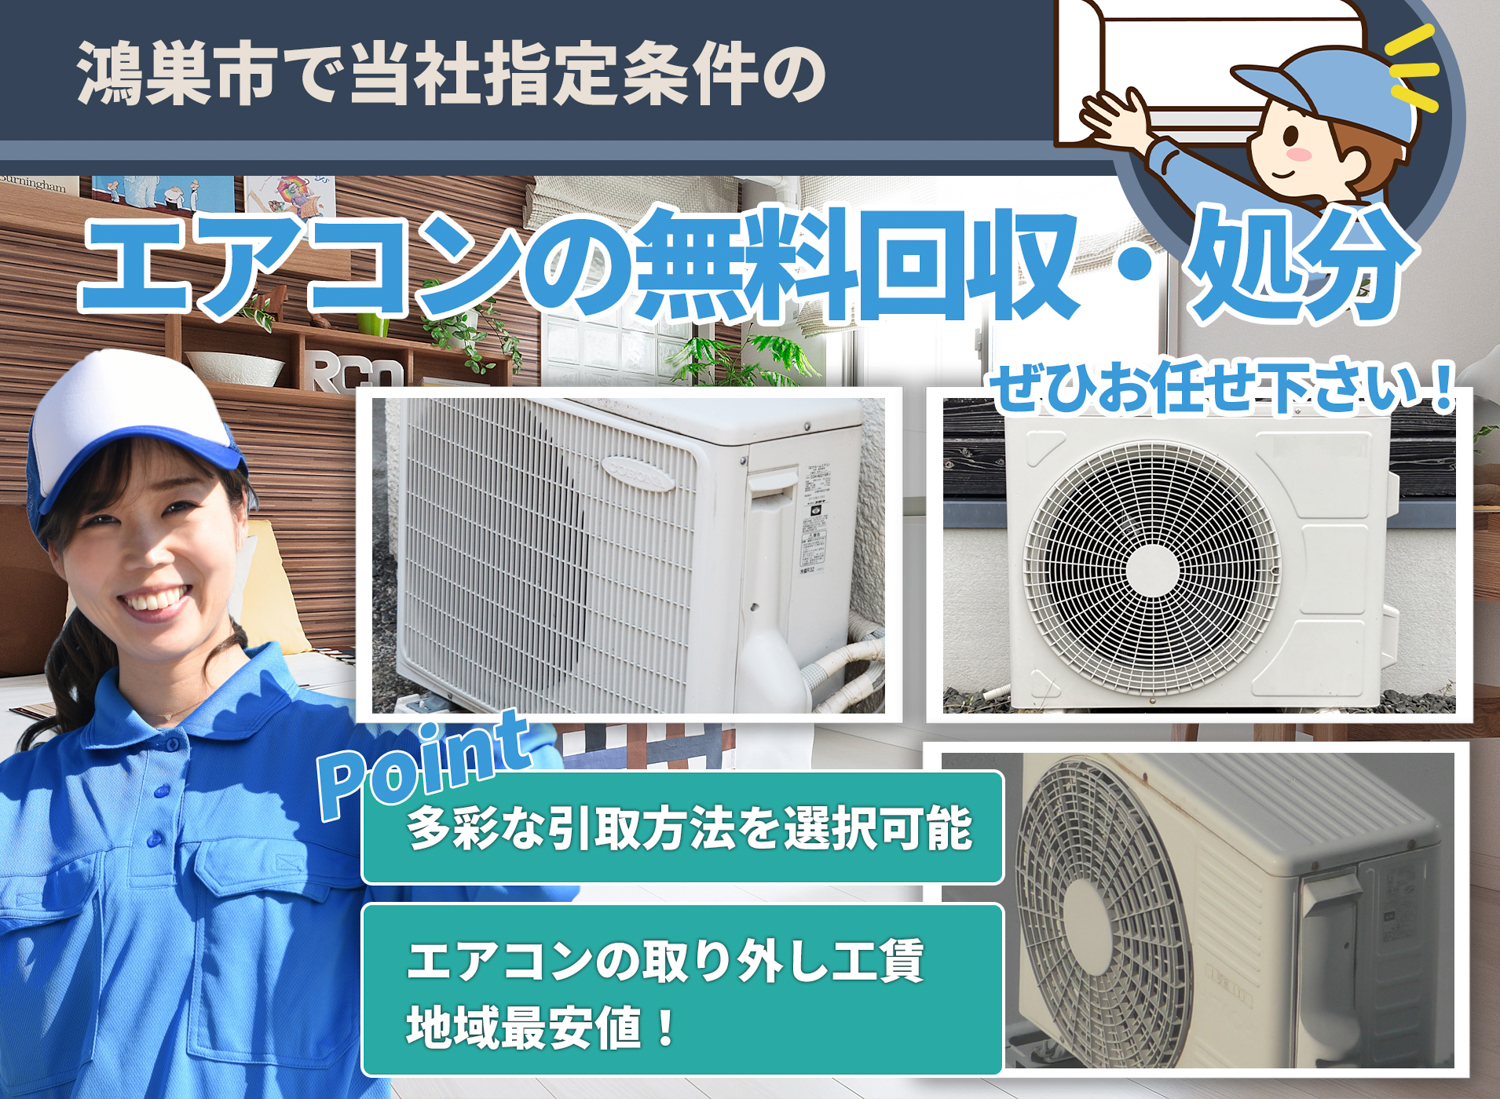 鴻巣市で丁寧に「お客様と寄り添う」エアコン無料回収処分隊のエアコン無料回収サービス